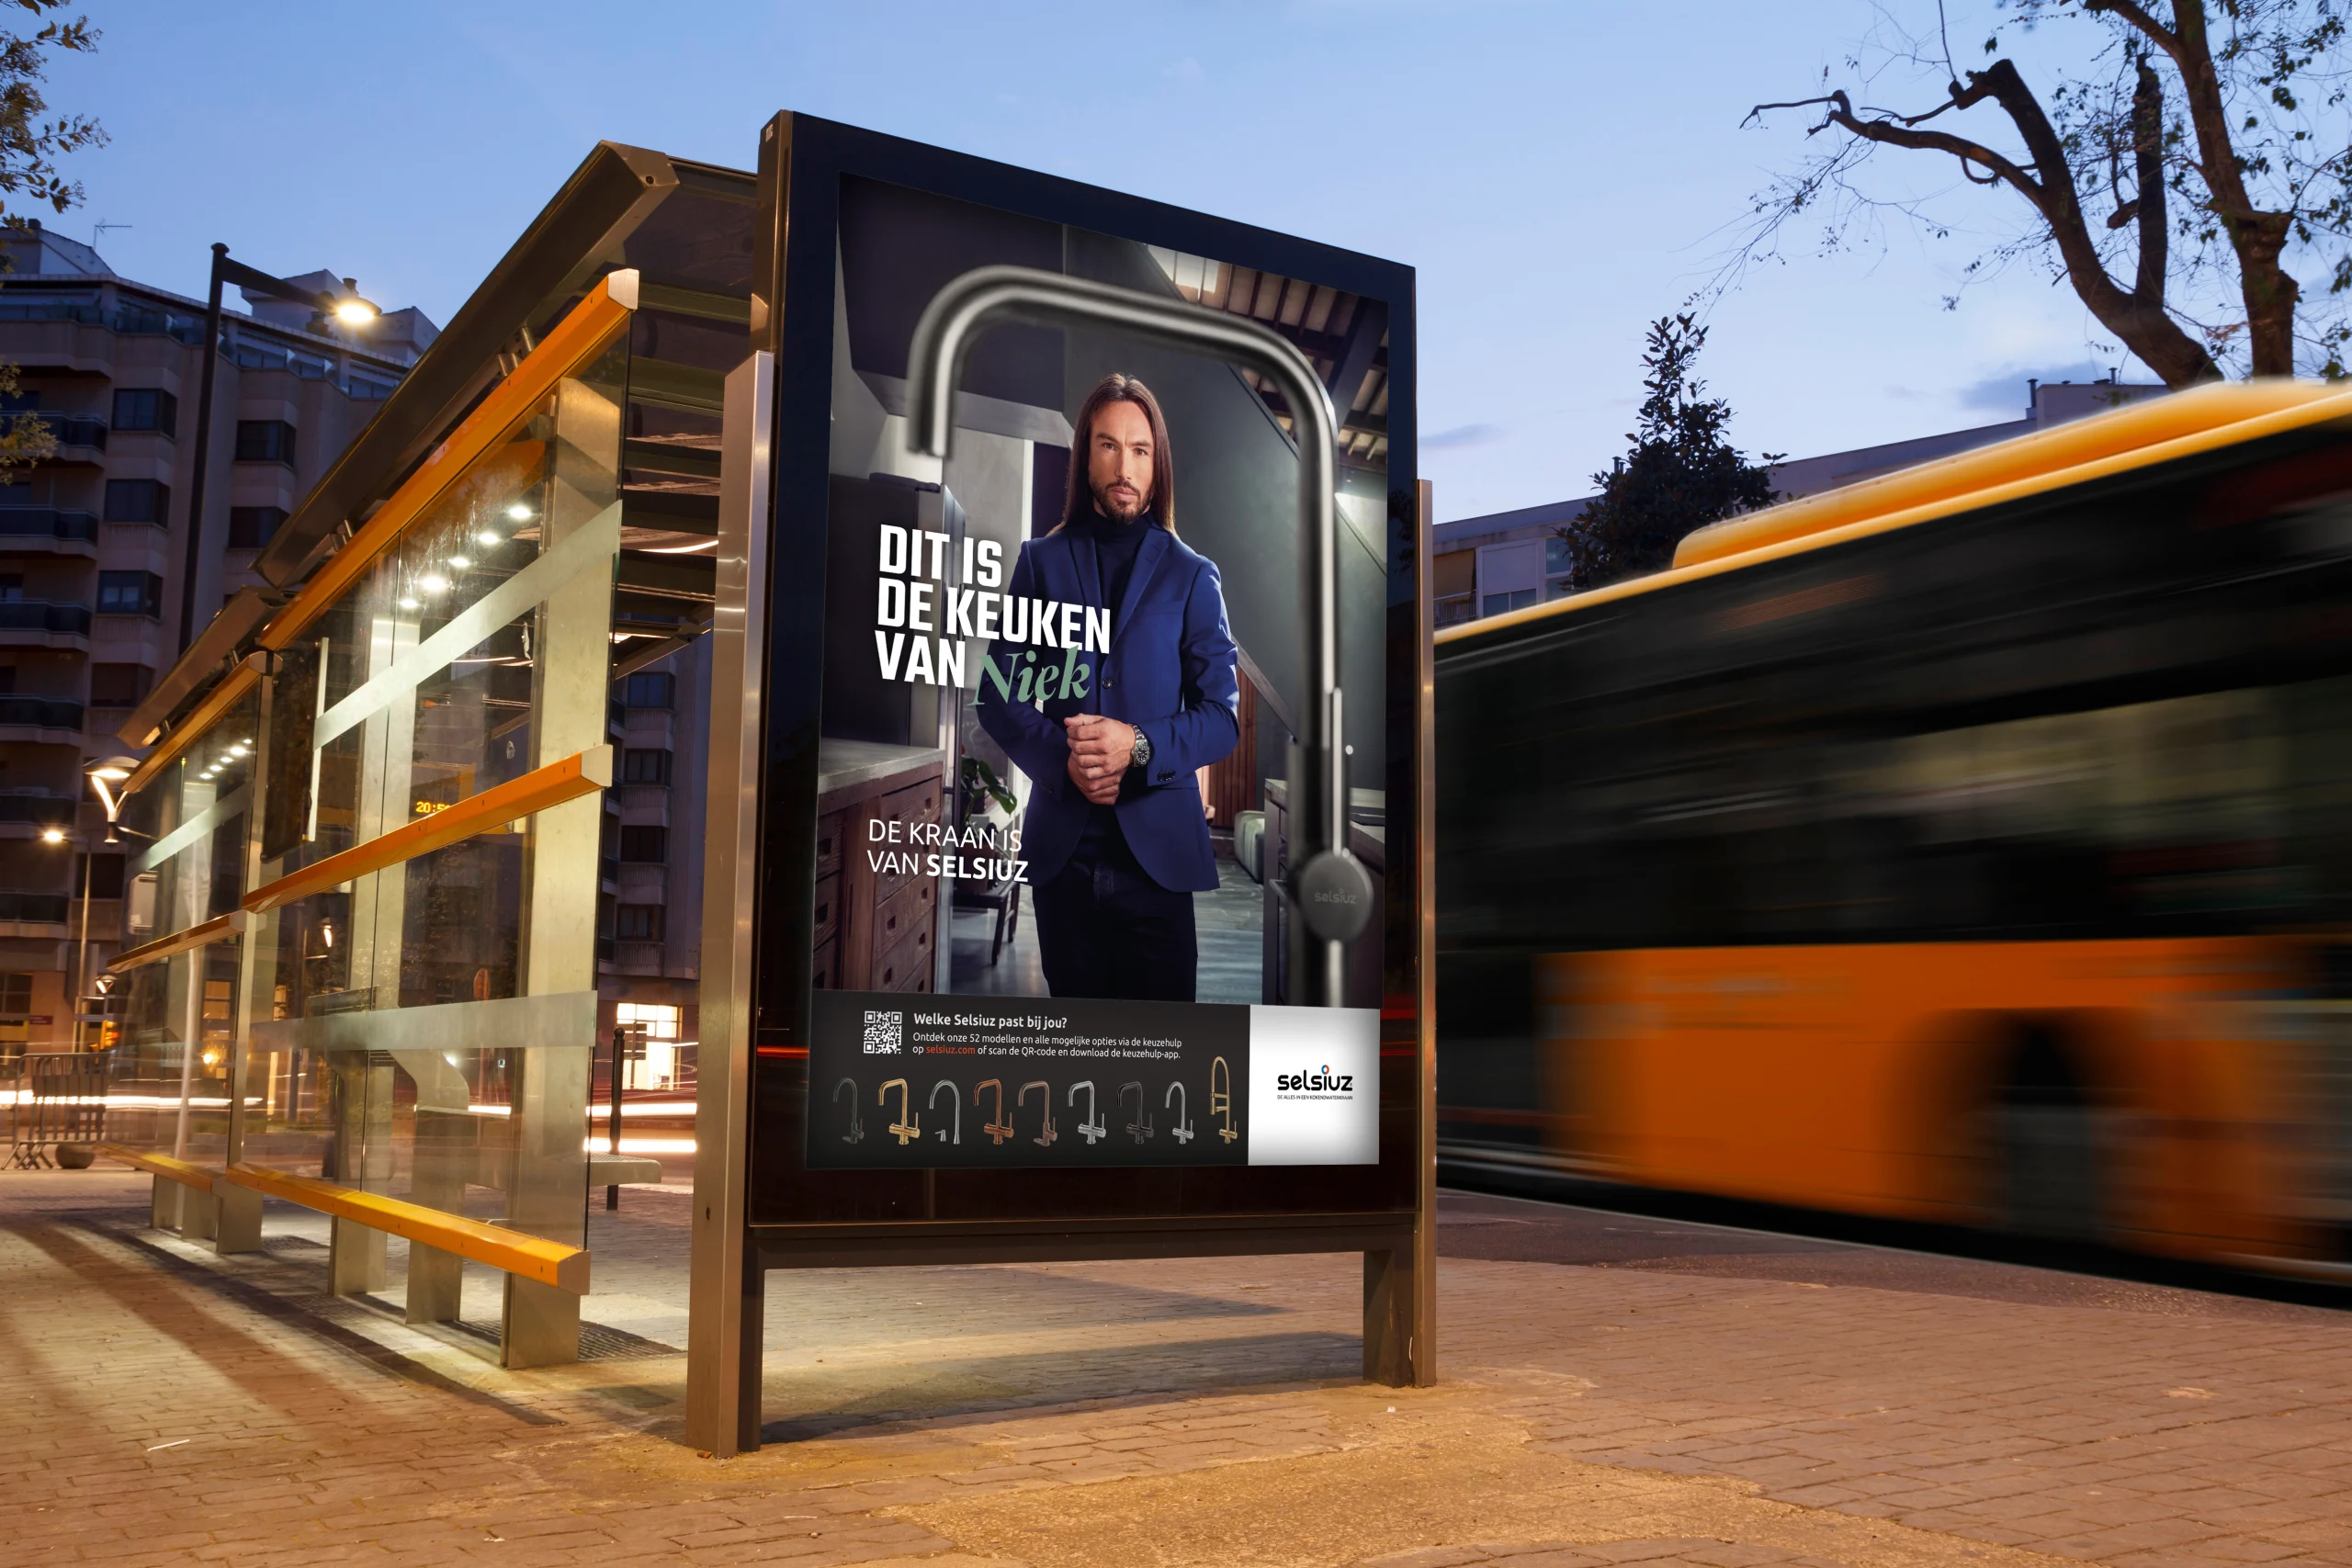 blank-billboard-mock-up-in-a-bus-stop-2021-09-01-18-49-50-utc kopie